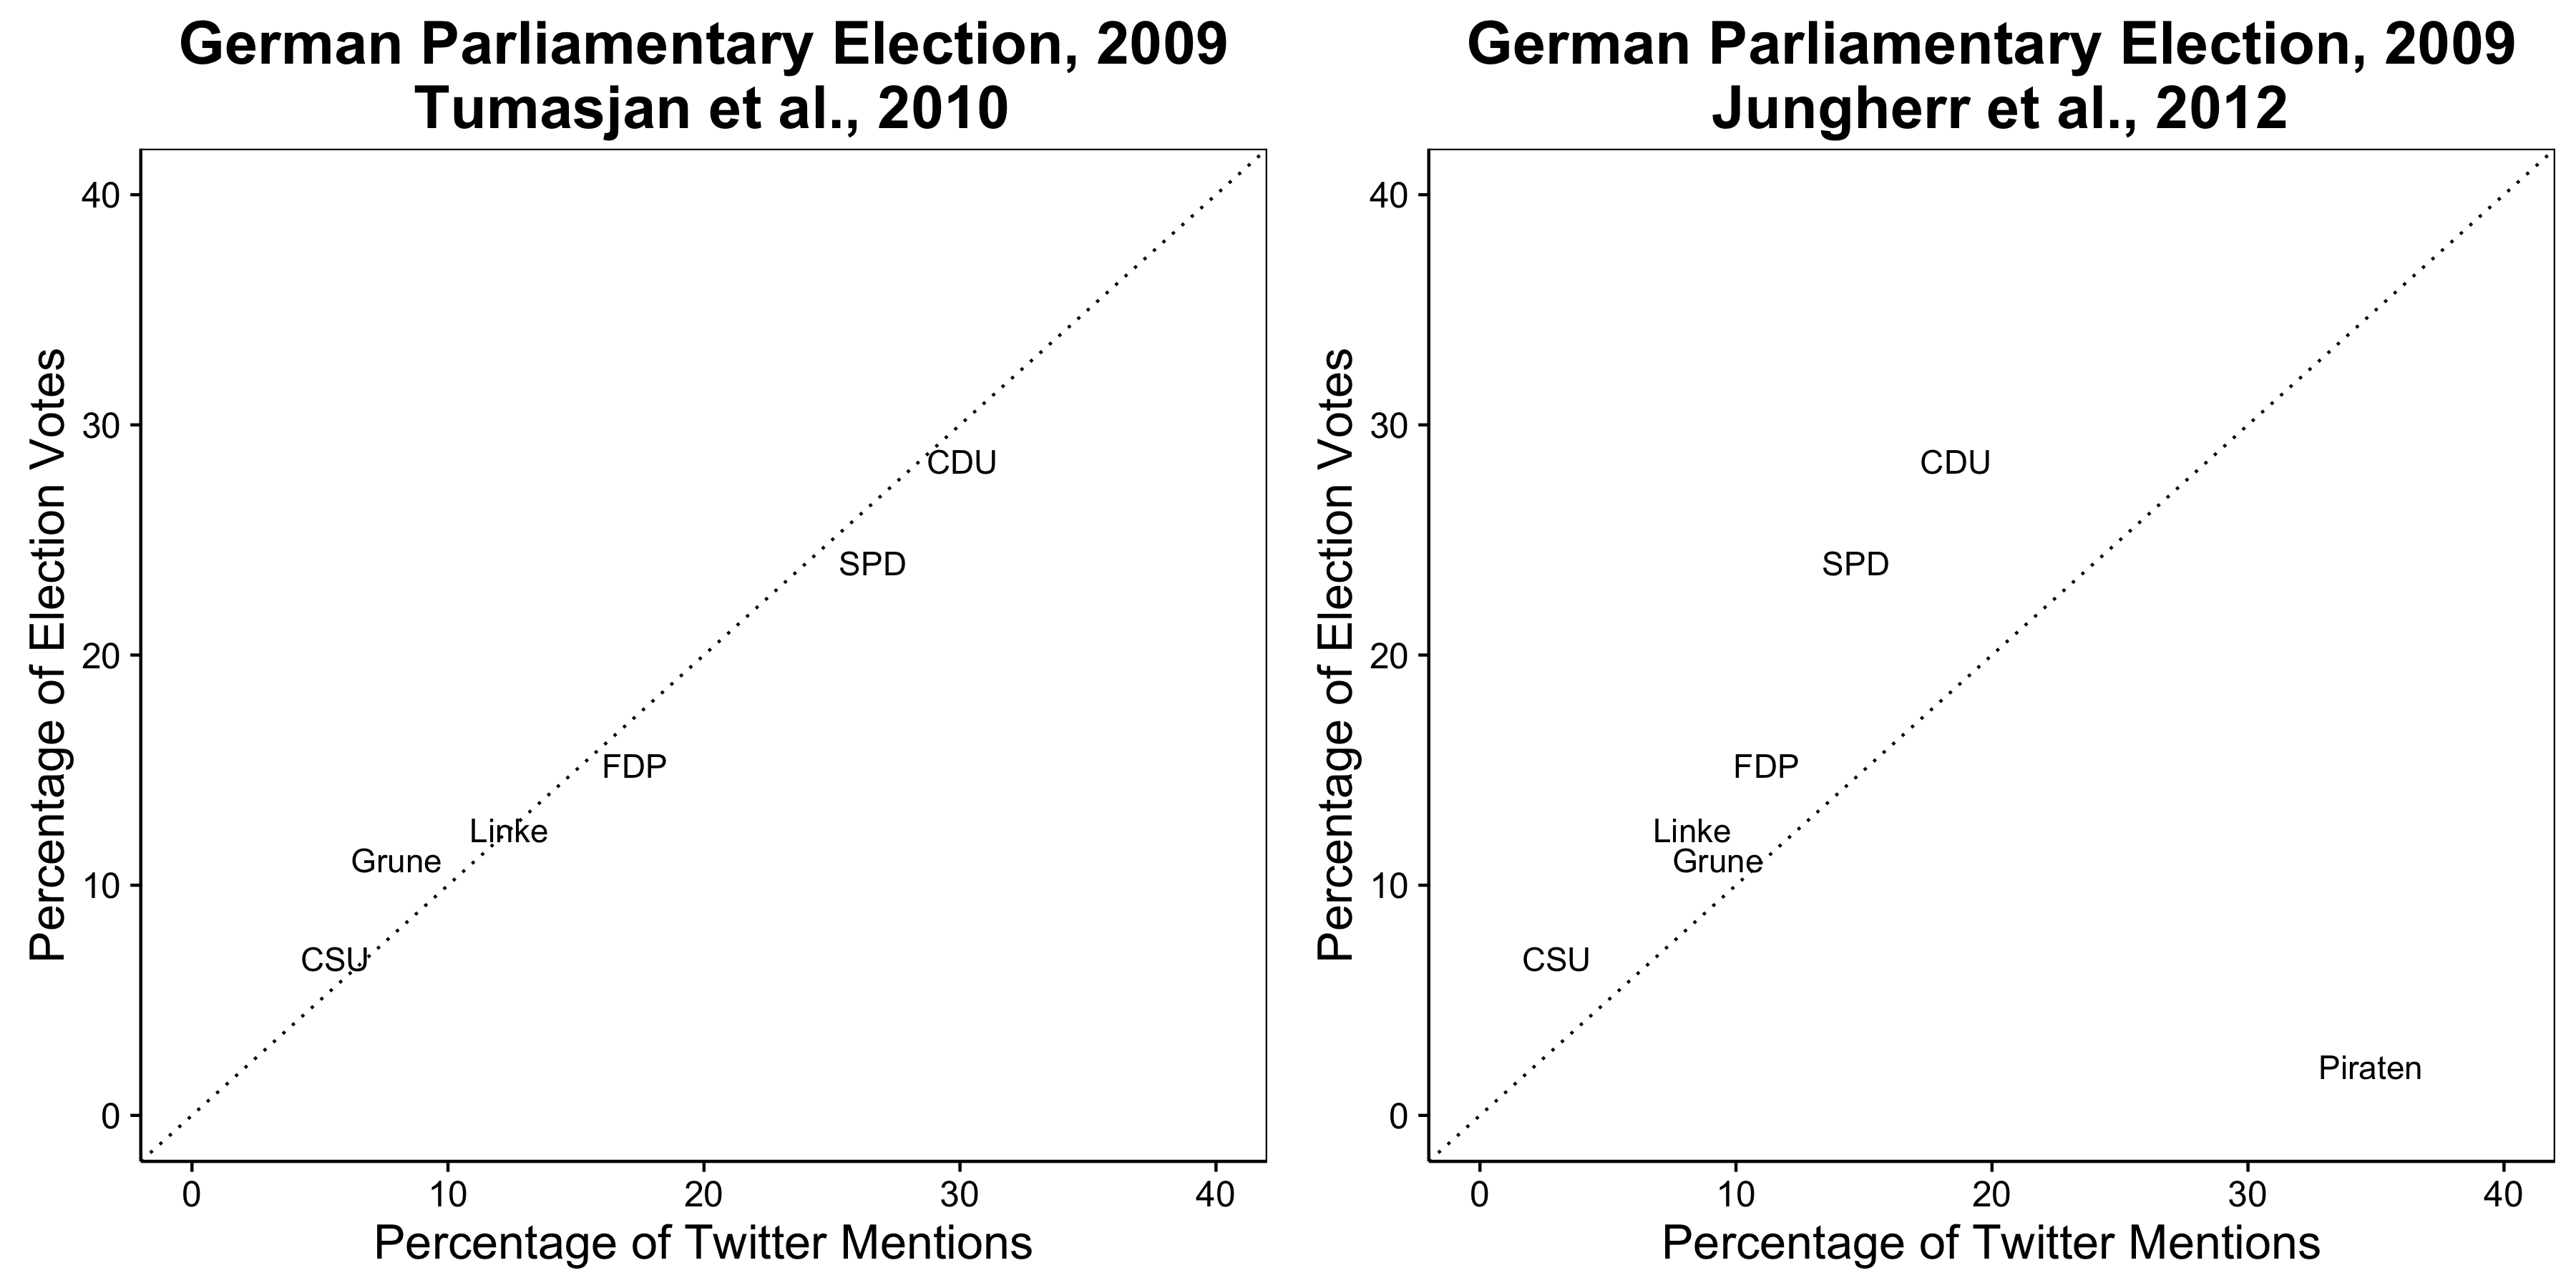 Նկար 2.9: Twitter նշում է հայտնվում է կանխատեսել արդյունքները 2009 թ. Գերմանական ընտրություններում (Tumasjan et al., 2010), սակայն այս արդյունքը պարզվում է, կախված է մի շարք կամայական եւ չարդարացված ընտրության (Jungherr, Jurgens, եւ Շոնը 2012 թ.):